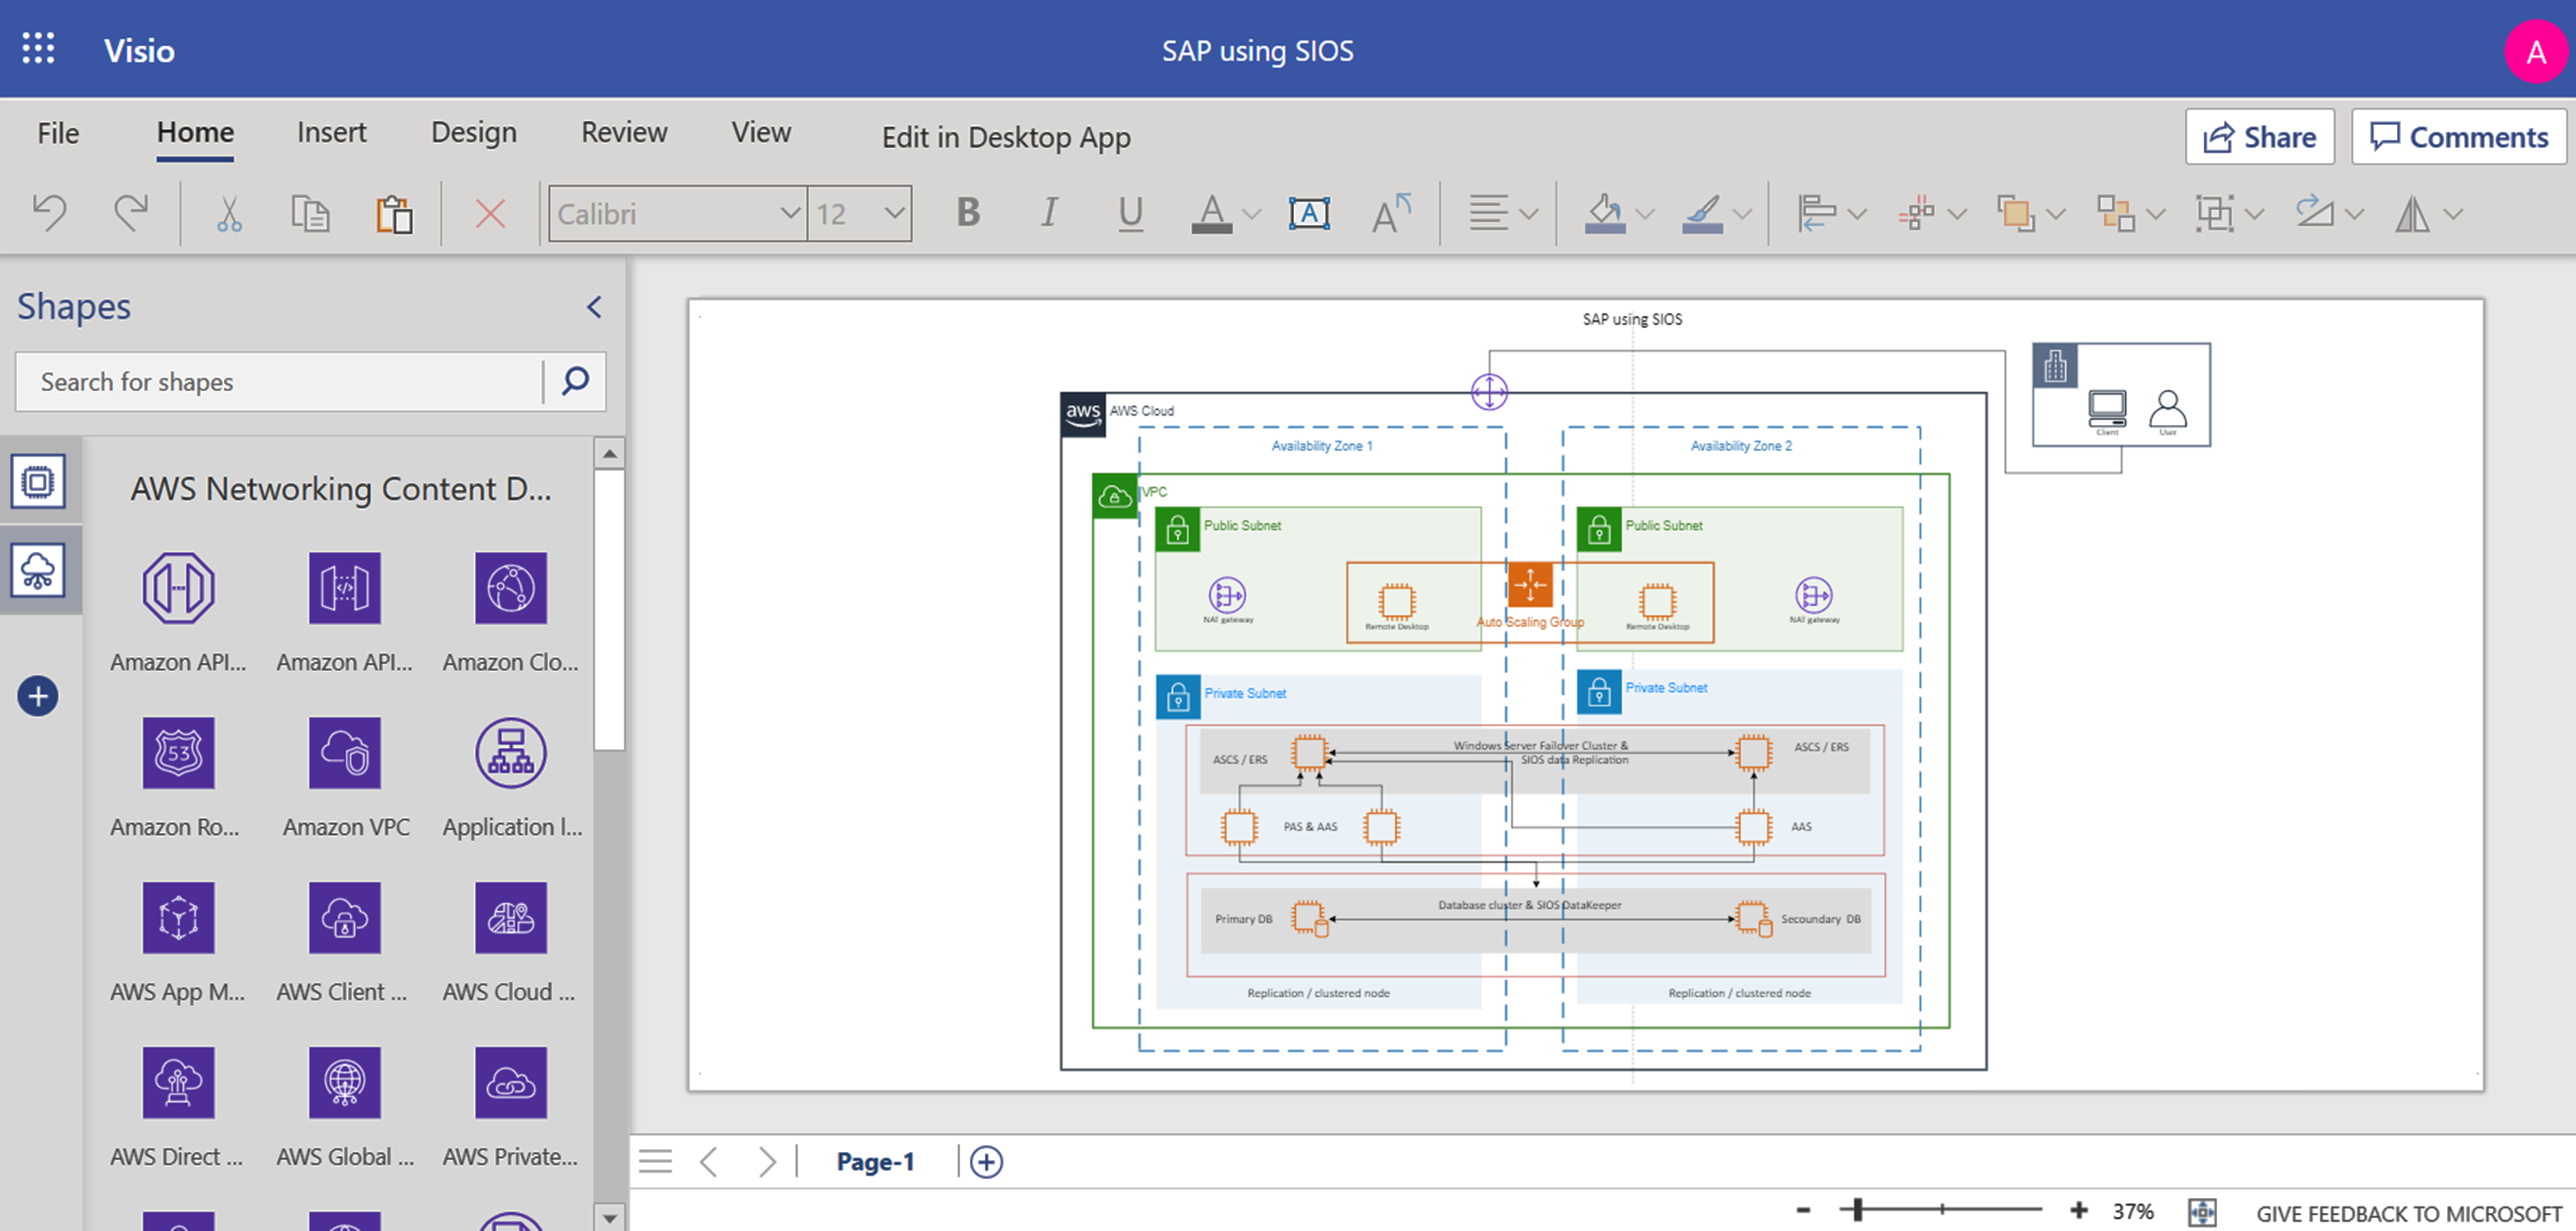 この画像は、SIOS を使用する SAP の図のスクリーン ショットを表しています。